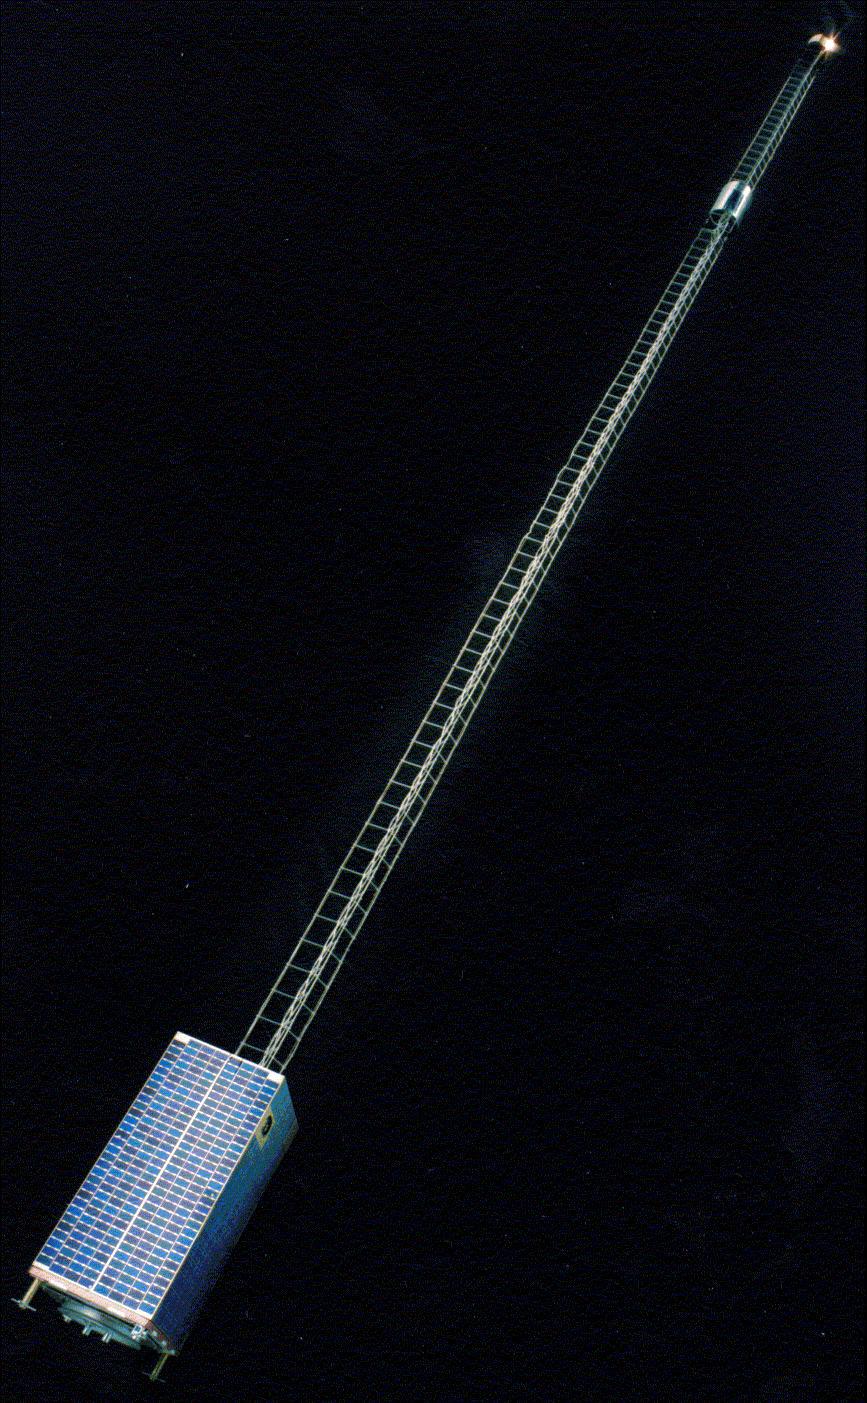 The Ørsted satellite Named after Danish physicist Hans Christian Ørsted